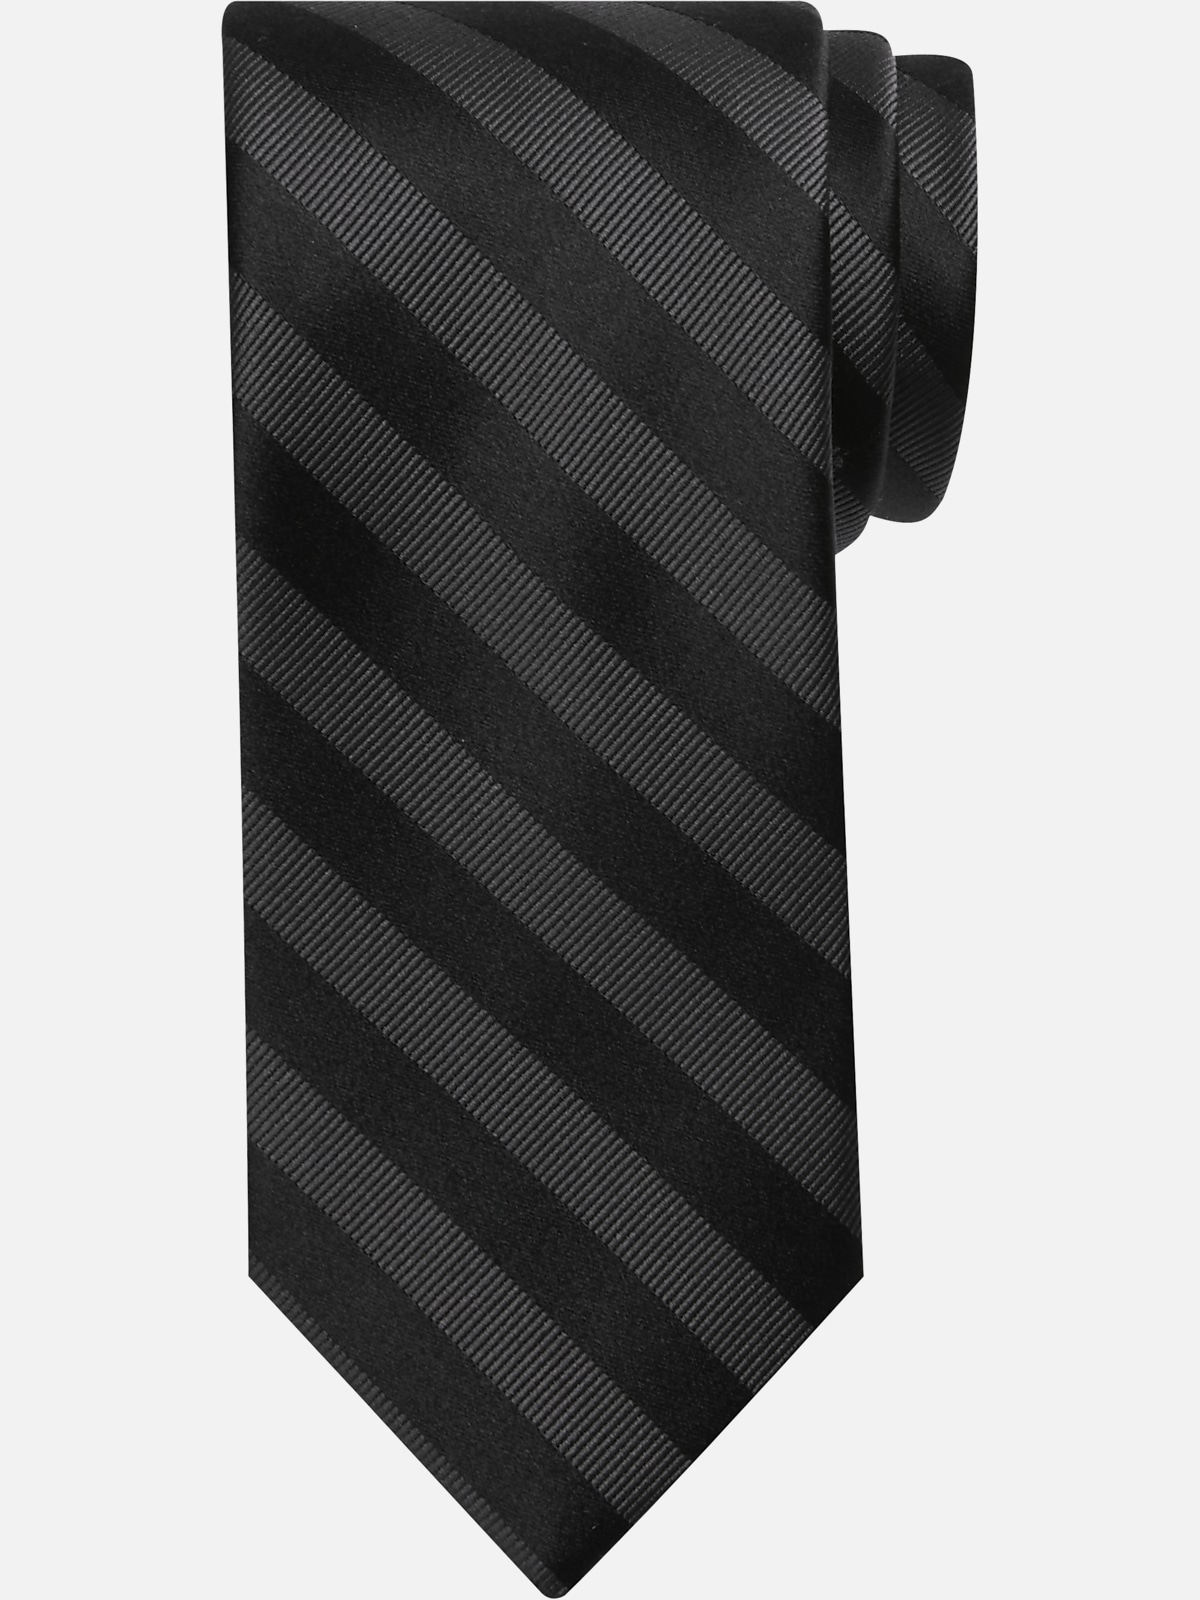 Awearness Kenneth Cole Tonal Stripe Tie | All Sale| Men's Wearhouse